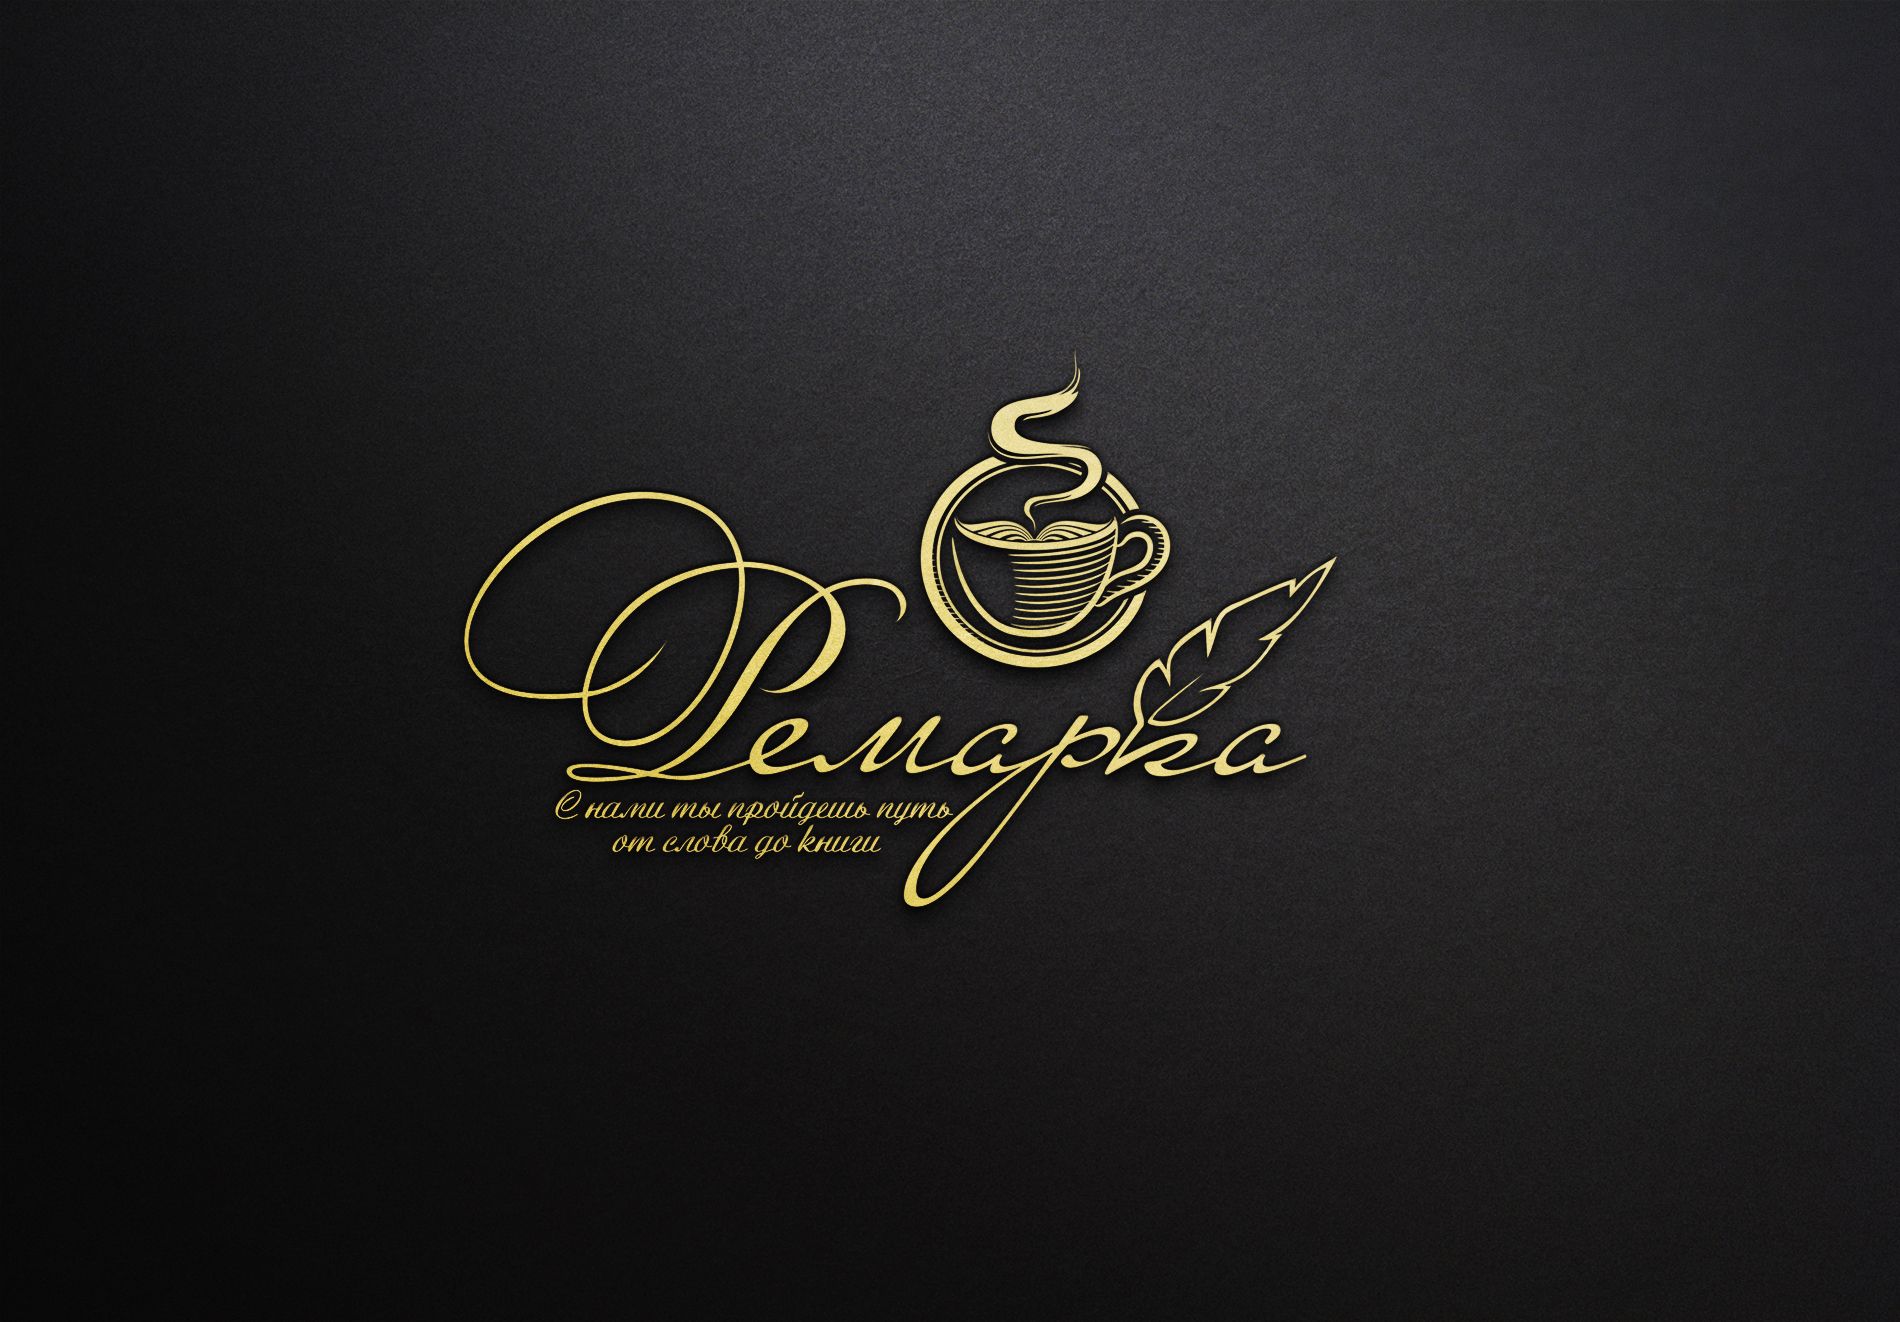 Лого и фирменный стиль для Ремарка кофейня-коворкинг - дизайнер La_persona